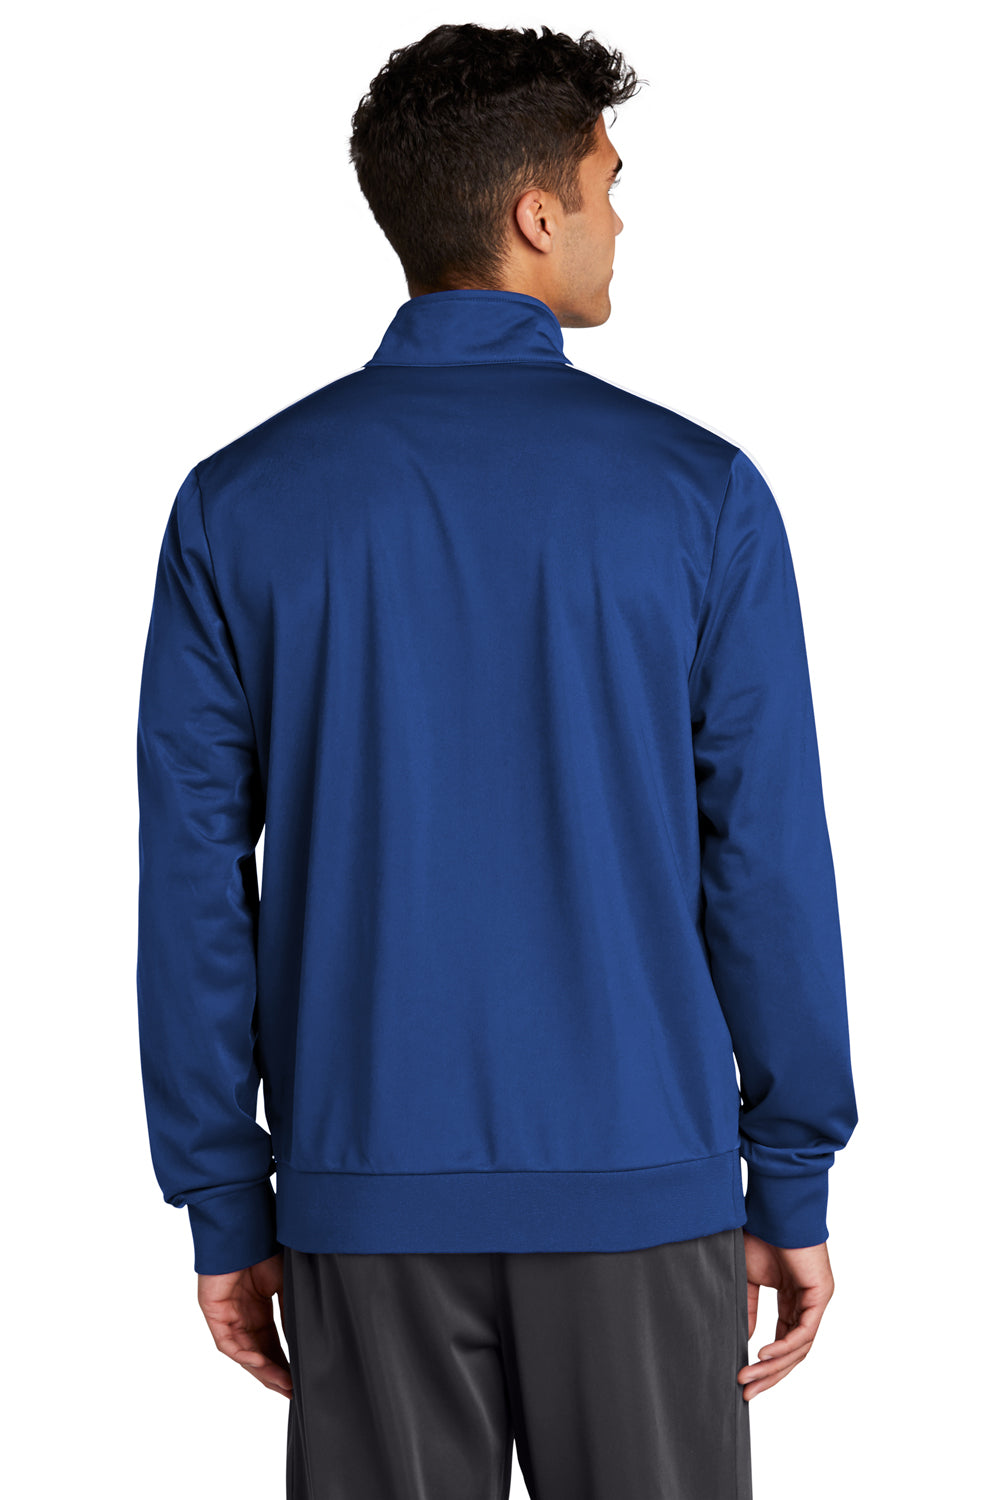 Sport-Tek Mens Full Zip Track Jacket True Royal Blue/White Side